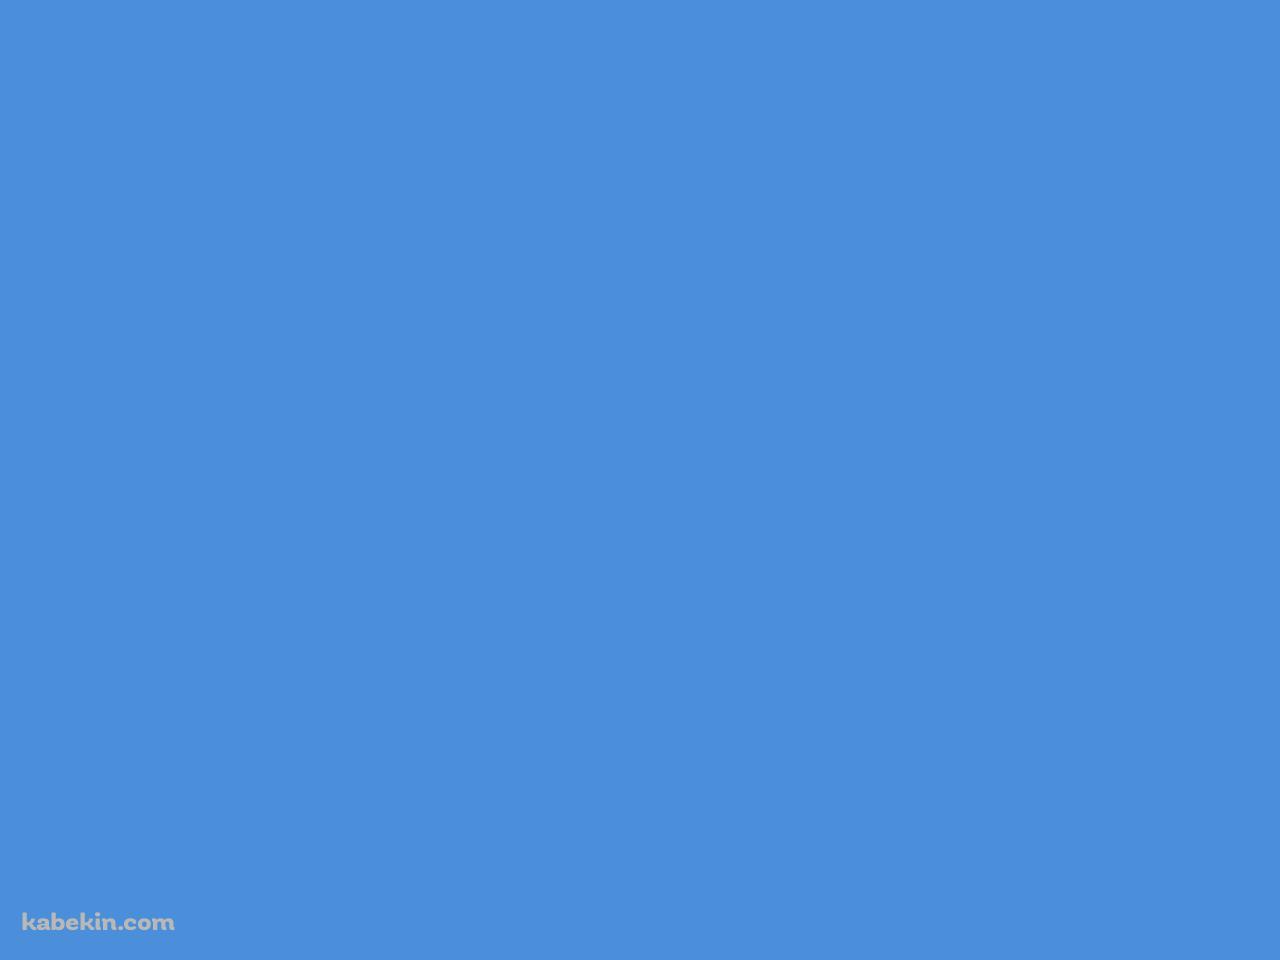 パステルブルー / 淡い青色の壁紙(1280px x 960px) 高画質 PC・デスクトップ用